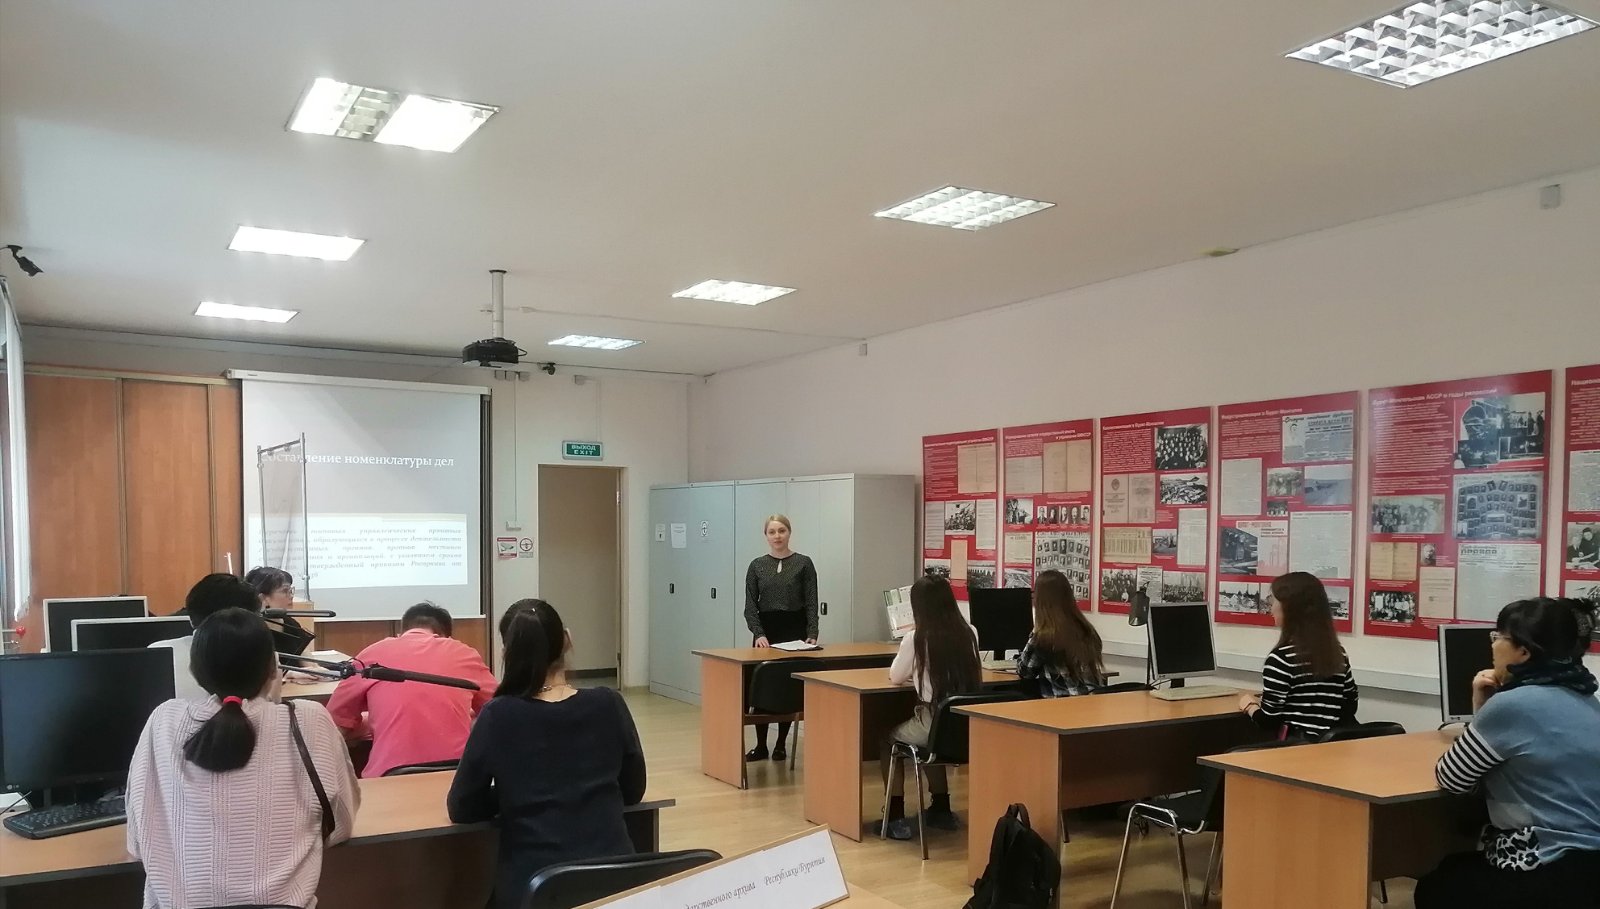 15 апреля 2022 г. в Государственном архиве Республики Бурятия  была проведена экскурсия для студентов БГУ им. Д. Банзарова